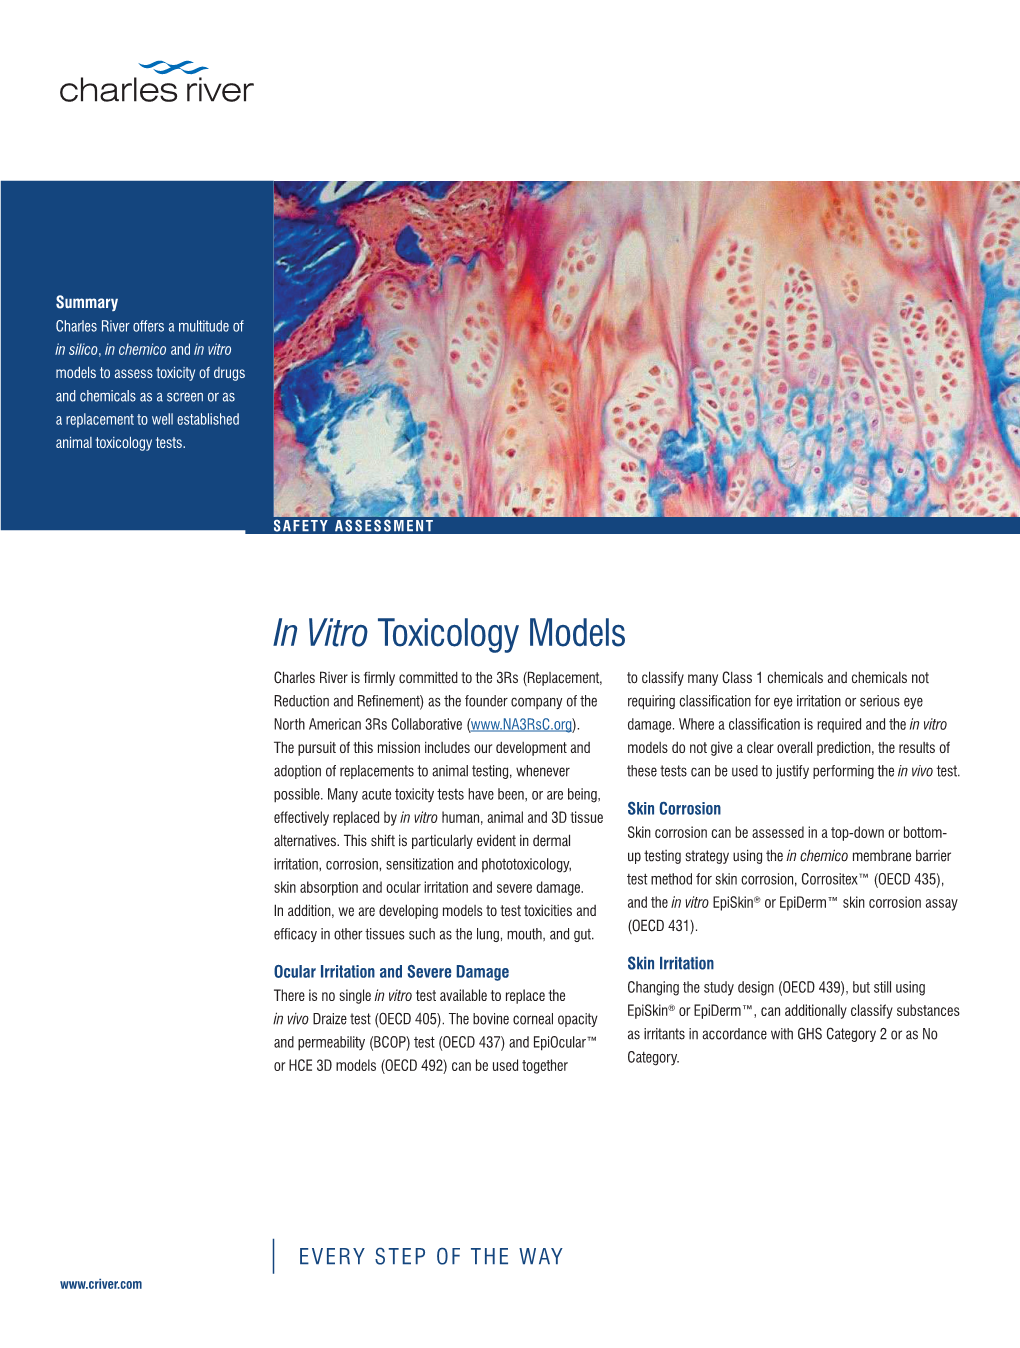 In Vitro Toxicology Models